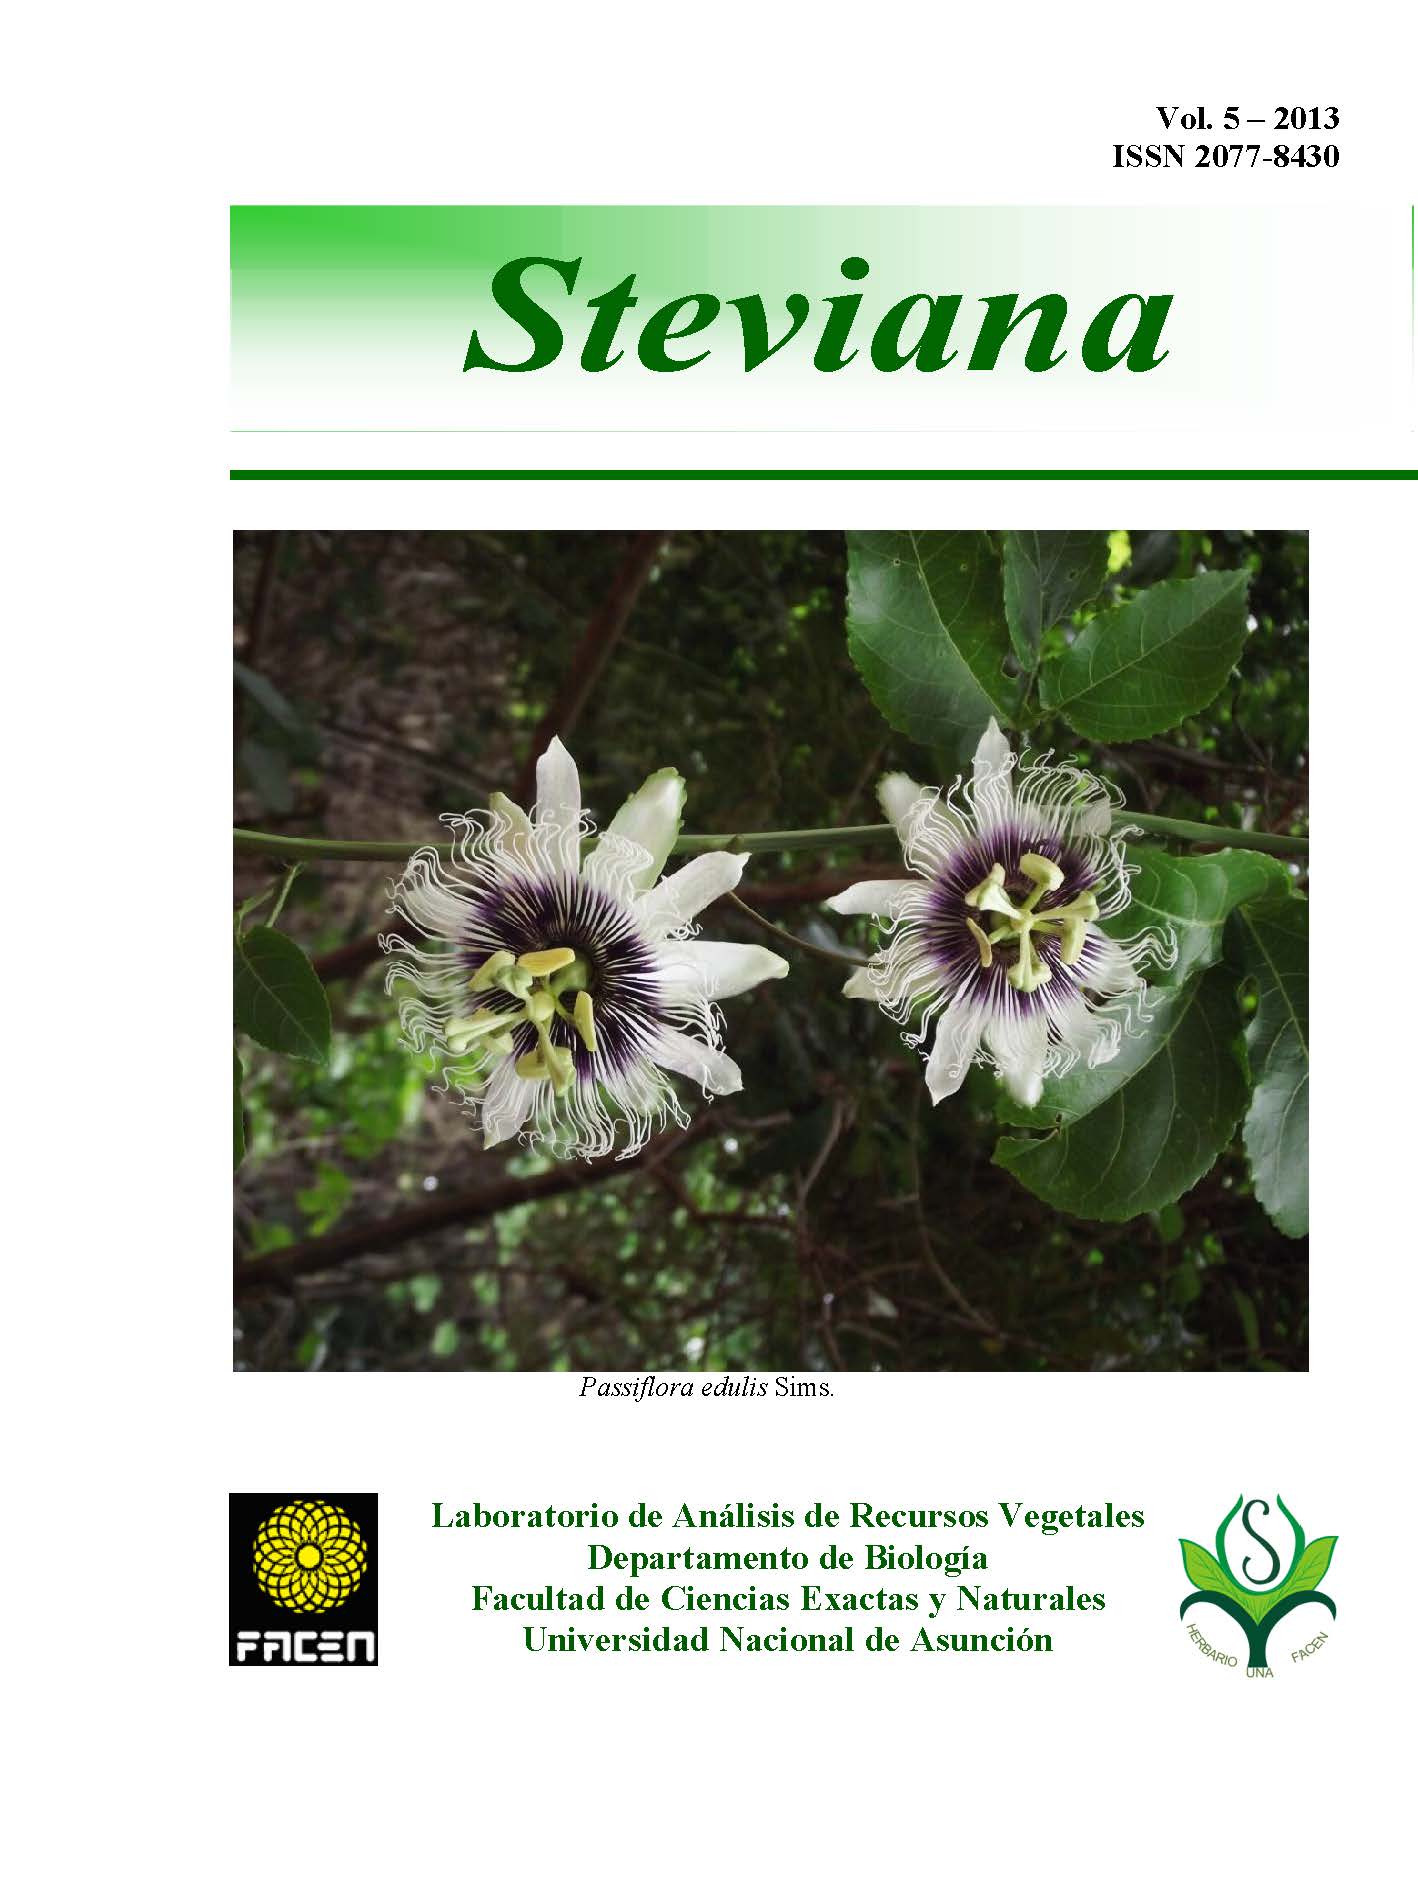 					Ver Vol. 5 (2013): Steviana
				